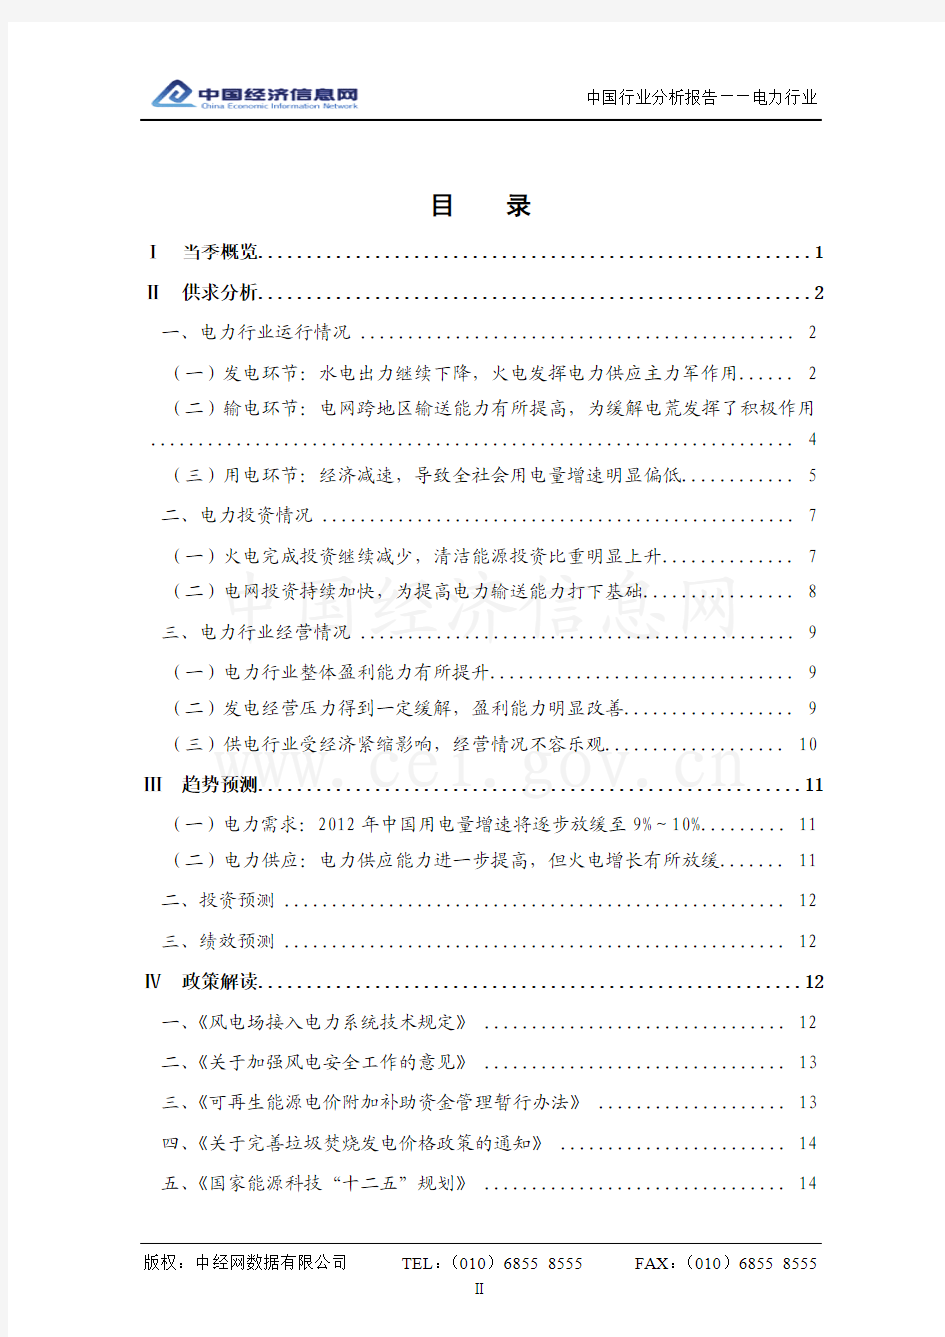 中国电力行业分析报告(2012年1季度)